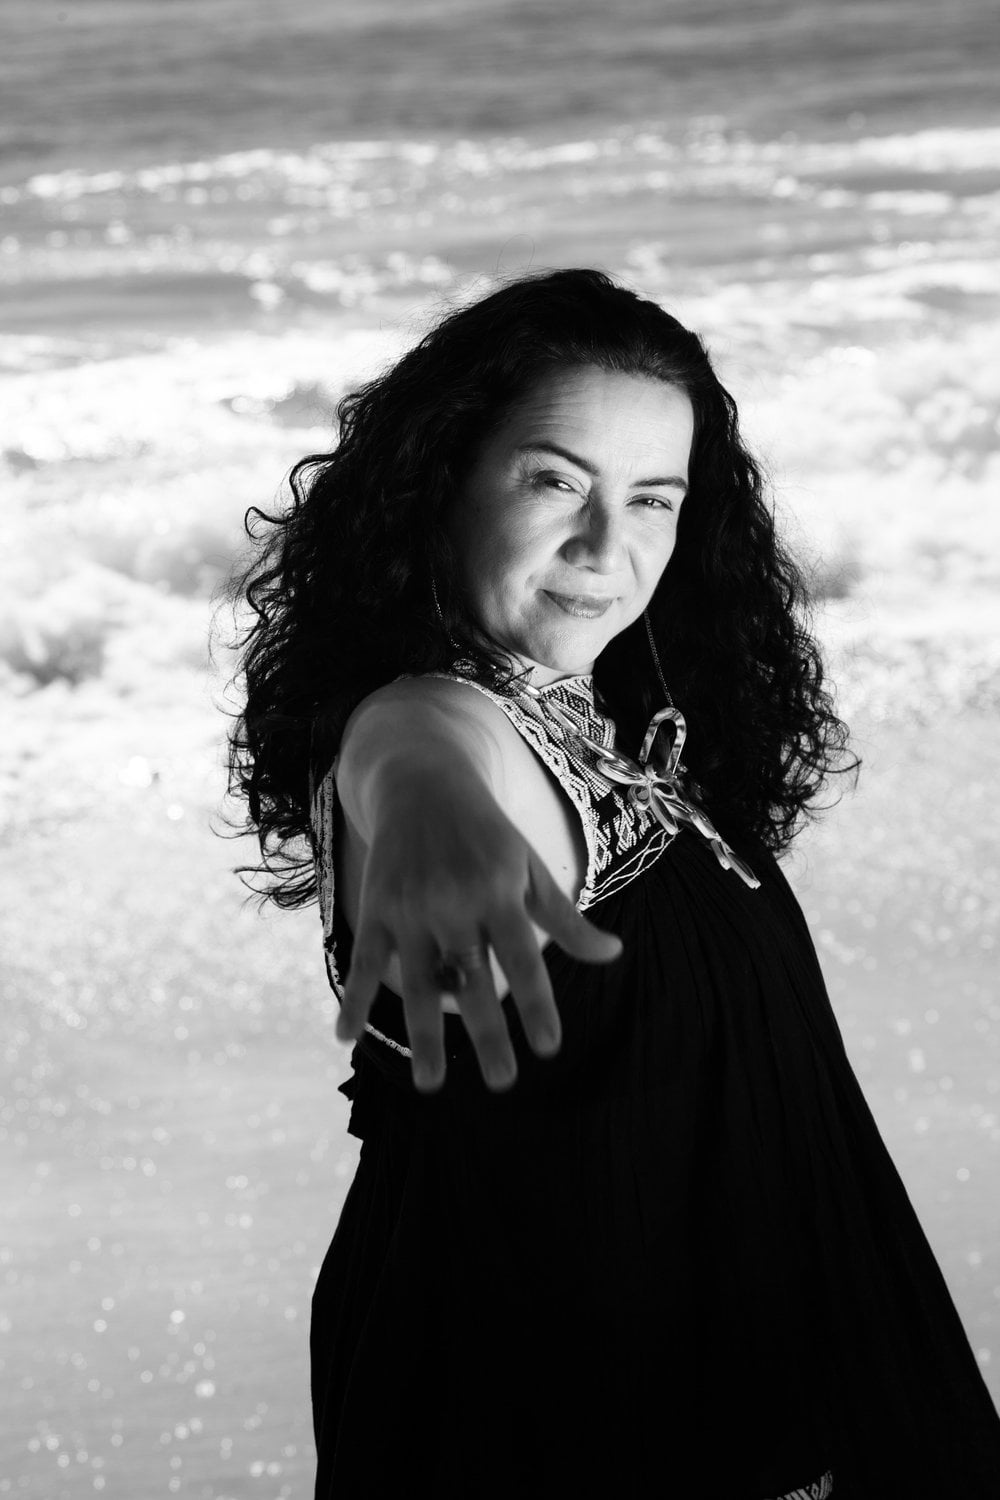 La artista chilena- neoyorquina Claudia Acuña lanza su nuevo disco “DUO” con importantes figuras del Jazz internacional